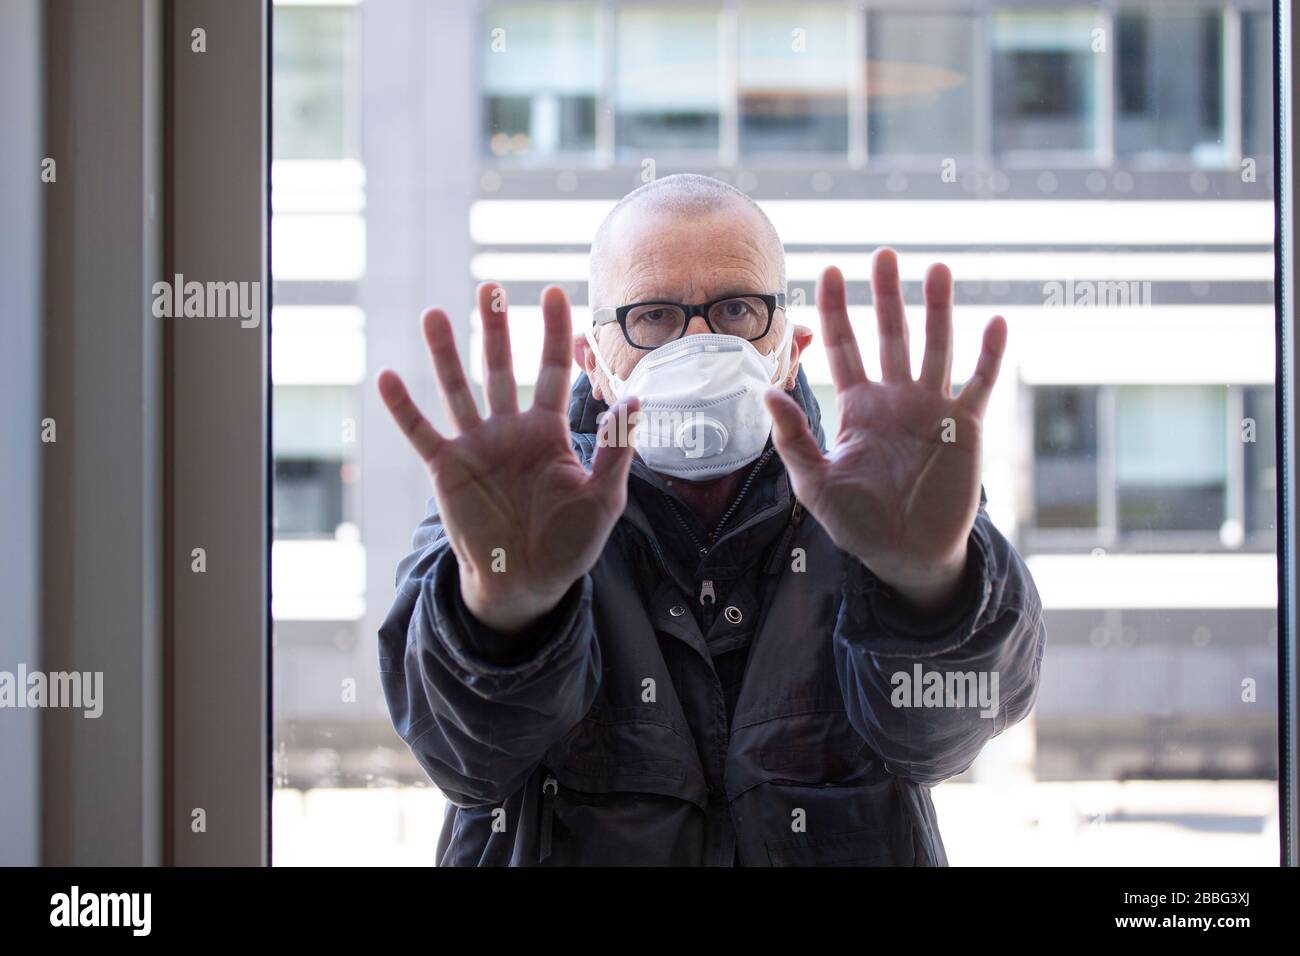 Mann mit medizinischer Gesichtsmaske, der außerhalb eines Fensterabschnitts steht, wobei seine Hände gegen Fensterglas gedrückt und nach innen schauen. Corona Covid-19 Virus qua Stockfoto